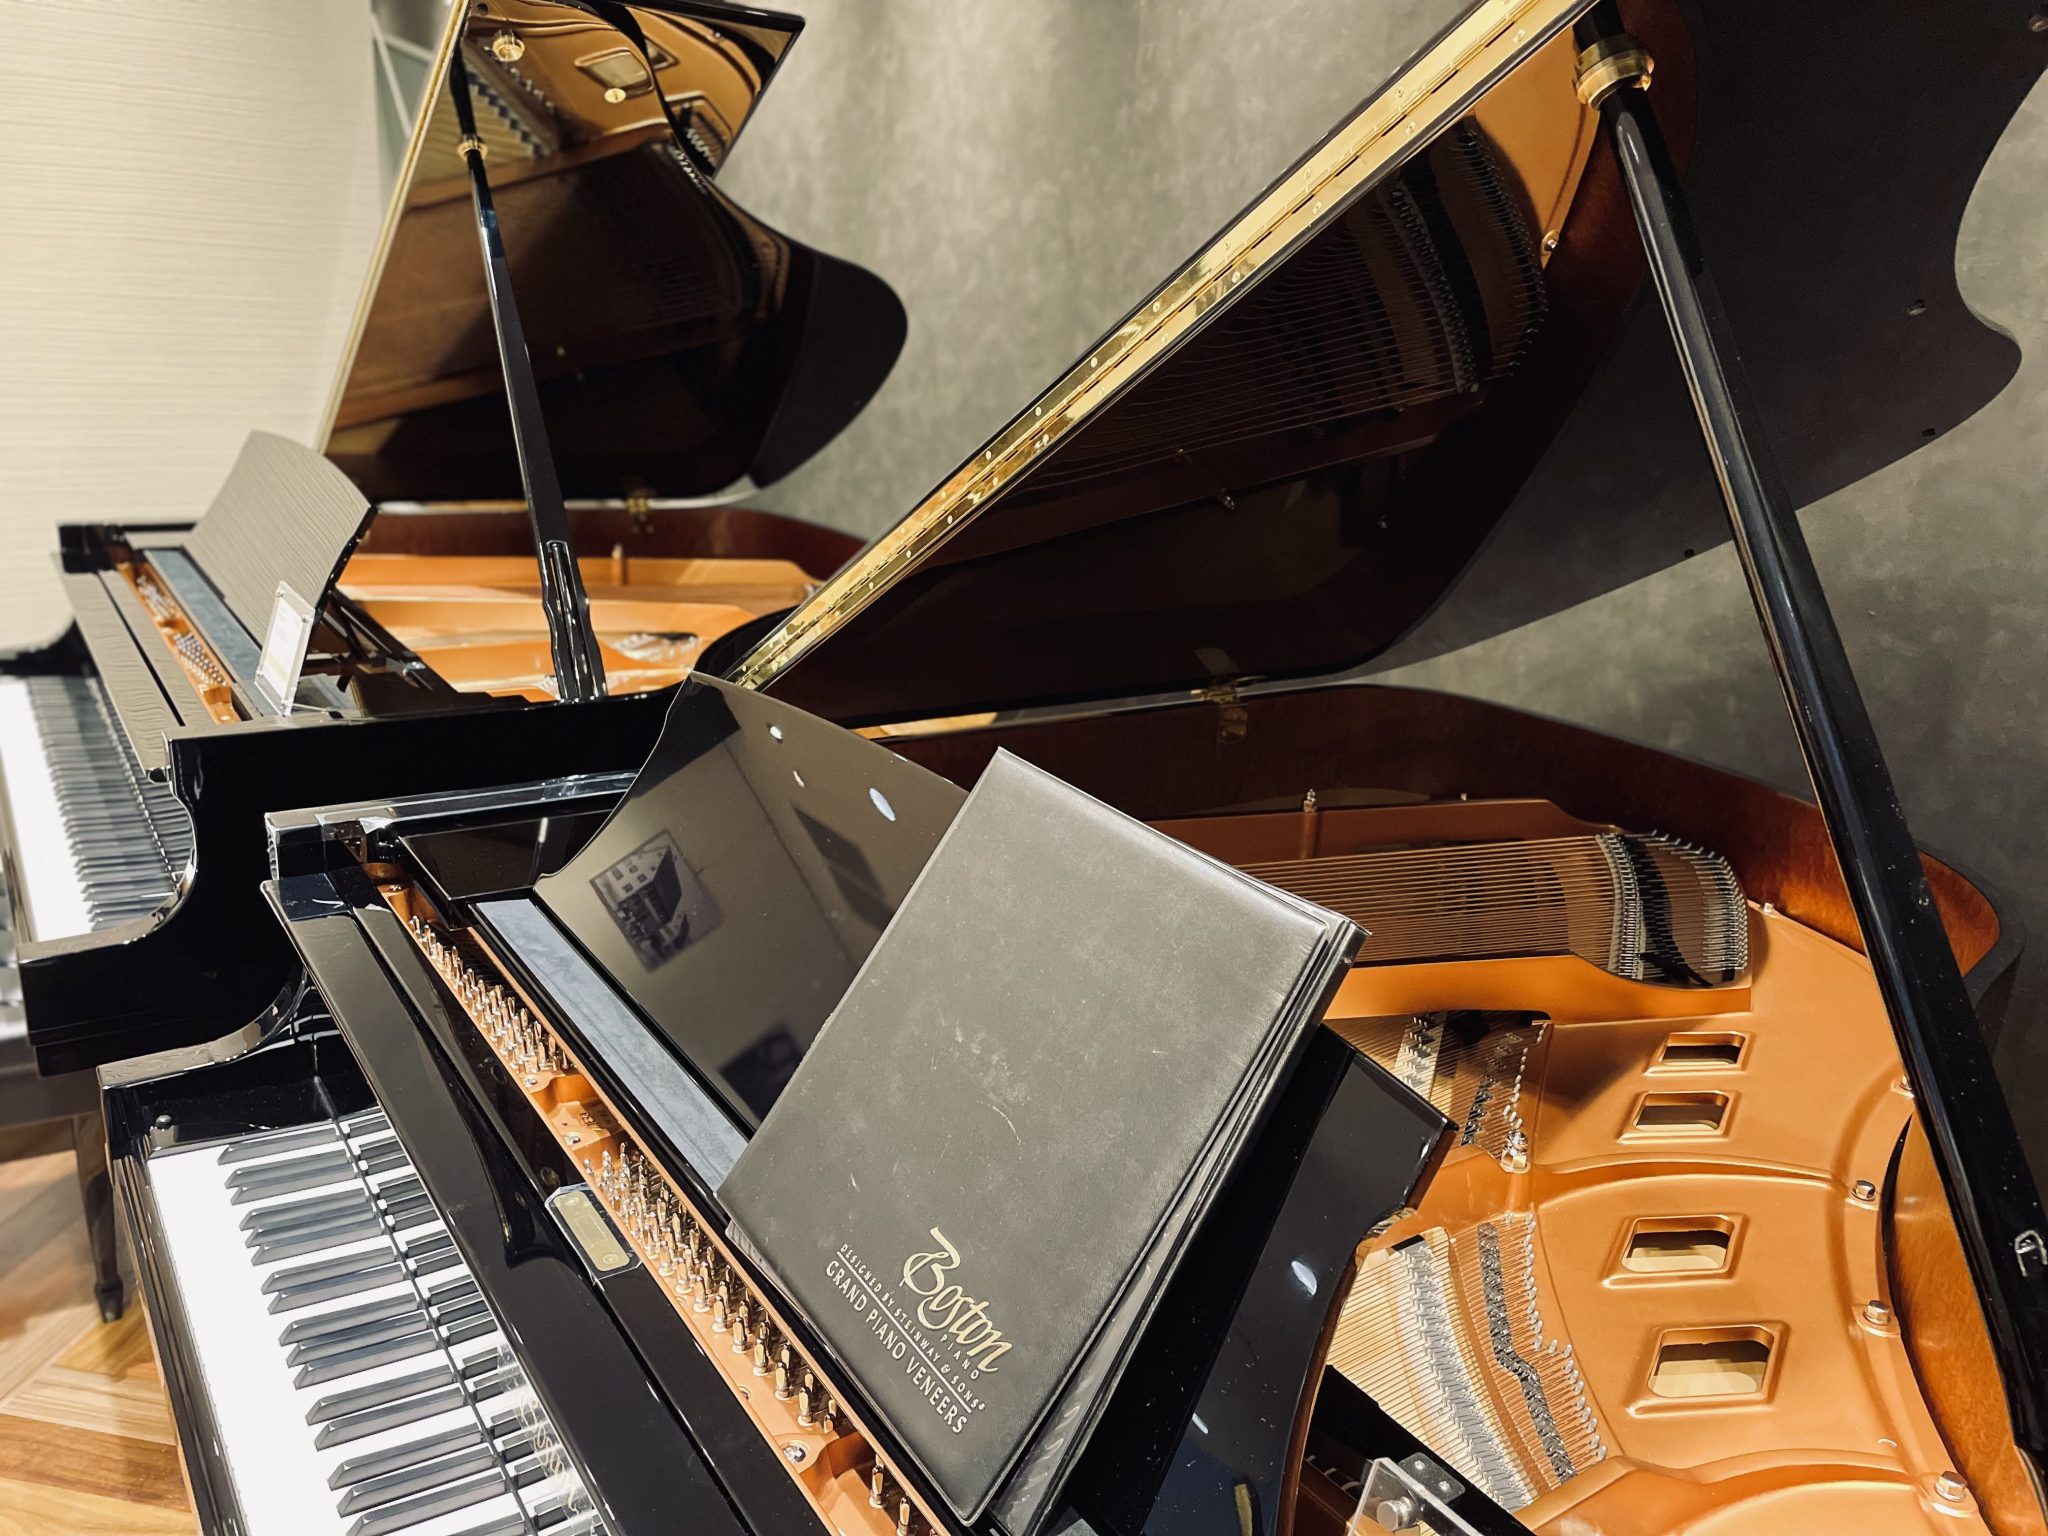 1月13日(土)から1月21日(日)まで「Boston(ボストン)ピアノフェア」を開催します。グランドピアノ3モデル、アップライトピアノ3モデル展示。専門スタッフがお客様のピアノ選びをお手伝いさせていただきます。スタインウェイ＆サンズのファミリーブランドであるBoston（ボストン）正規特約店の当店 […]